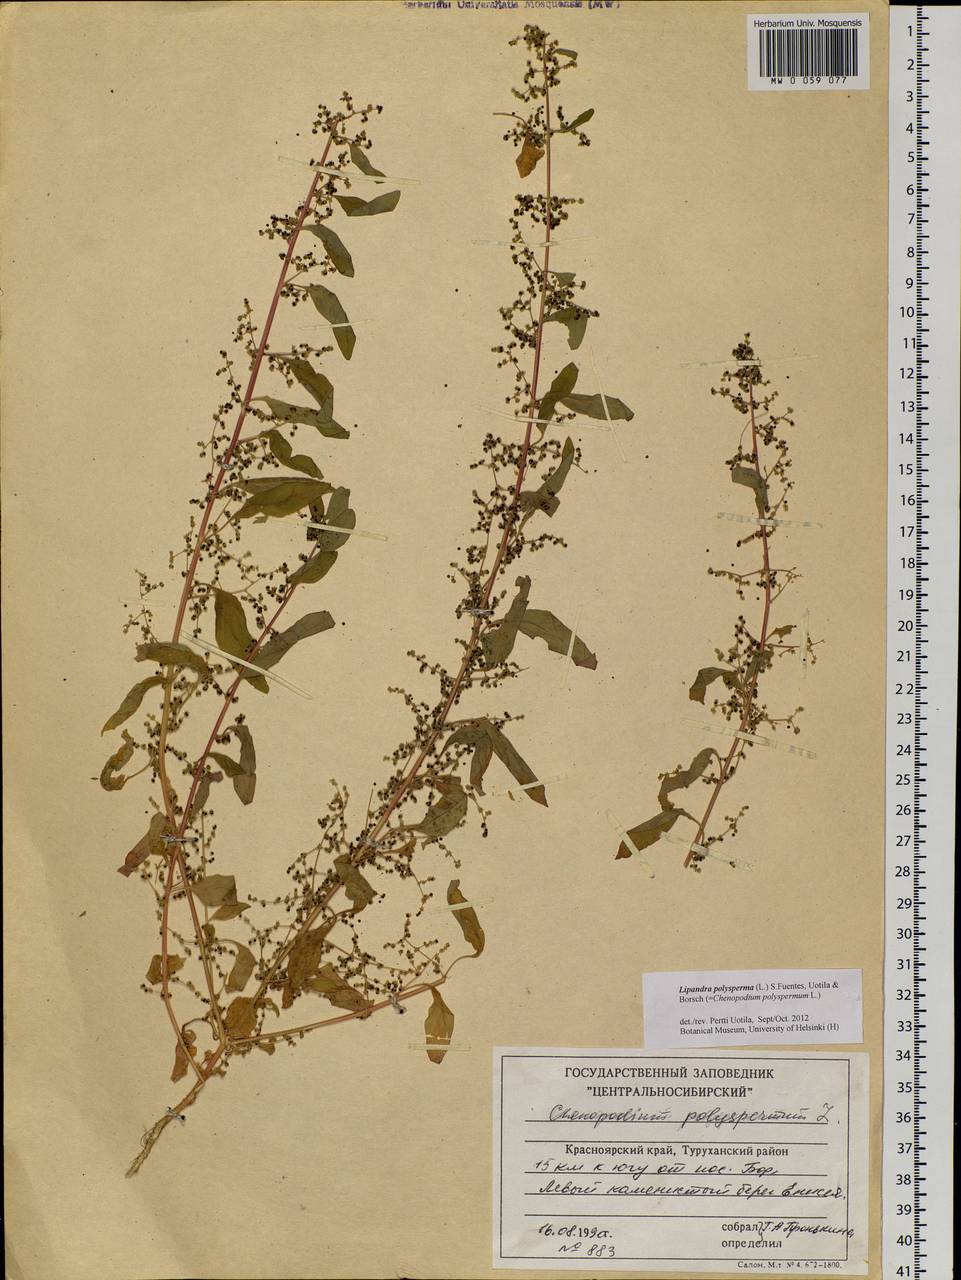 Lipandra polysperma (L.) S. Fuentes, Uotila & Borsch, Siberia, Central Siberia (S3) (Russia)